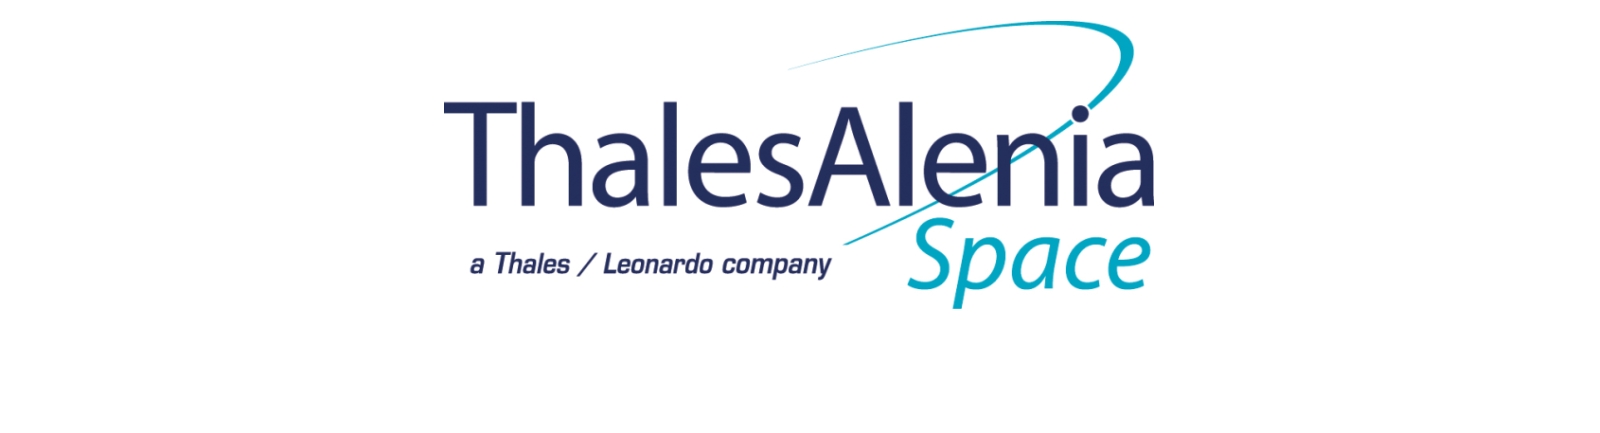 Thales Alenia Space begrüßt den Plan der Europäischen Kommission, gemeinsame Verteidigungsforschungs- und -entwicklungsprojekte zu unterstützen